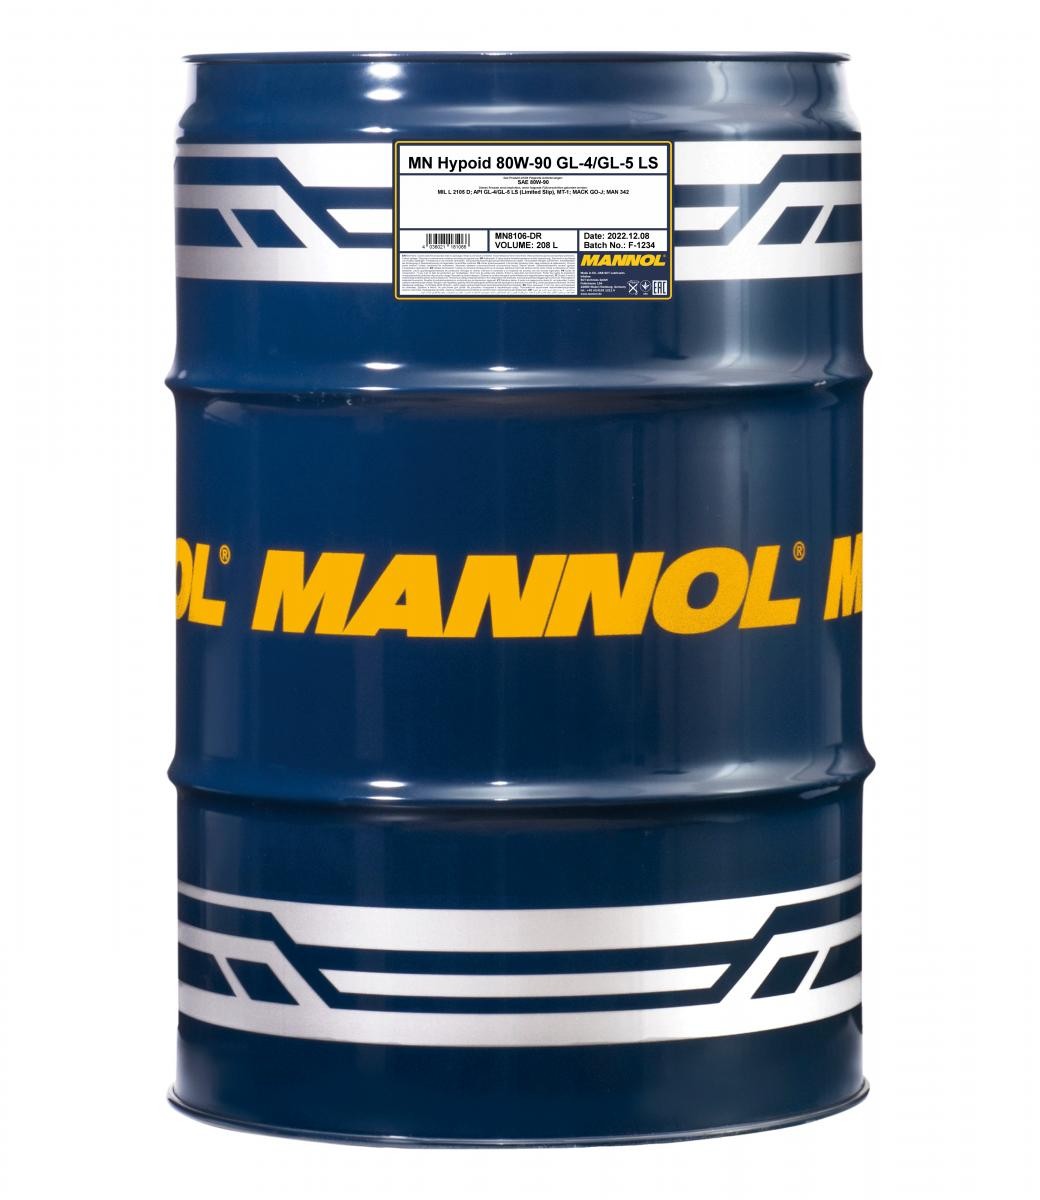 MANNOL Hypoid GL-5 80W-90, Mineral Oil, Capacity: 208l MIL-L 2105 D, MAN 342, MACK GO-J Transmission oil MN8106-DR buy